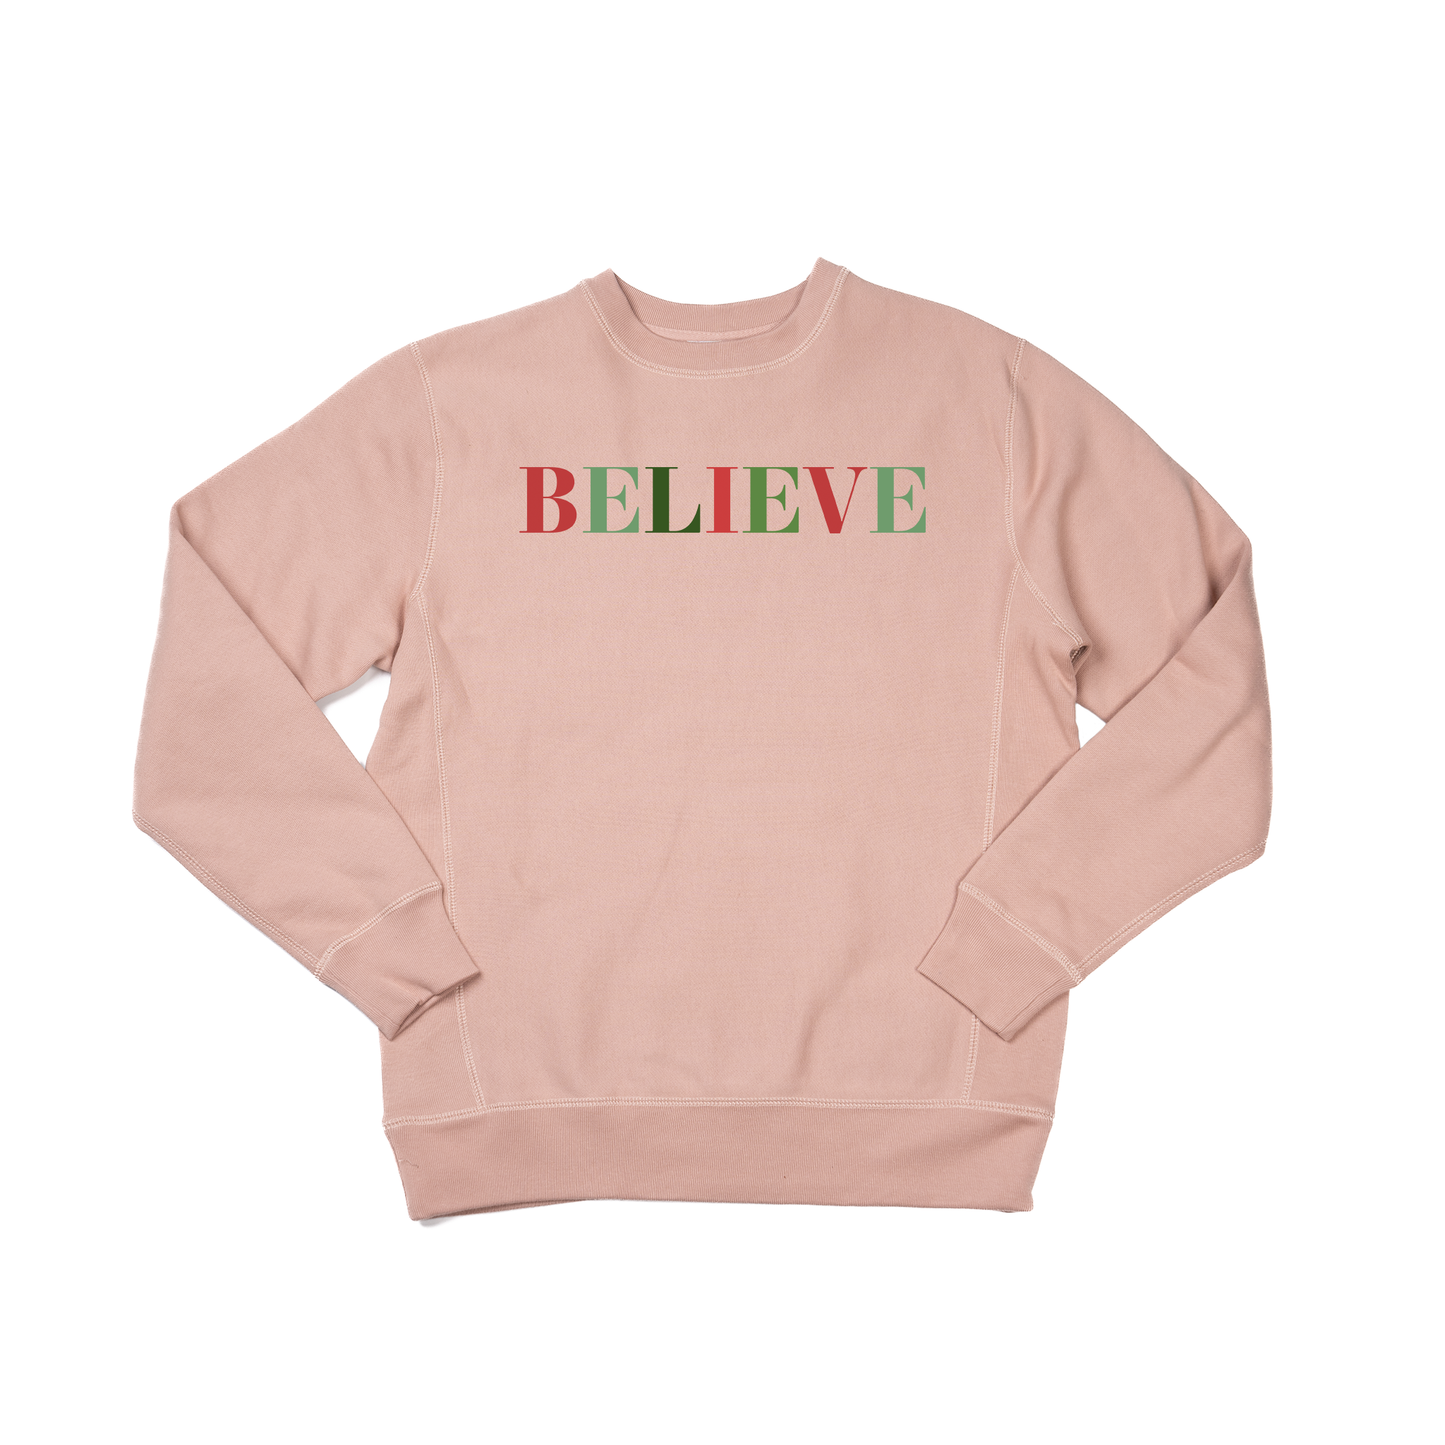 BELIEVE (Multi Color) - Heavyweight Sweatshirt (Dusty Rose)